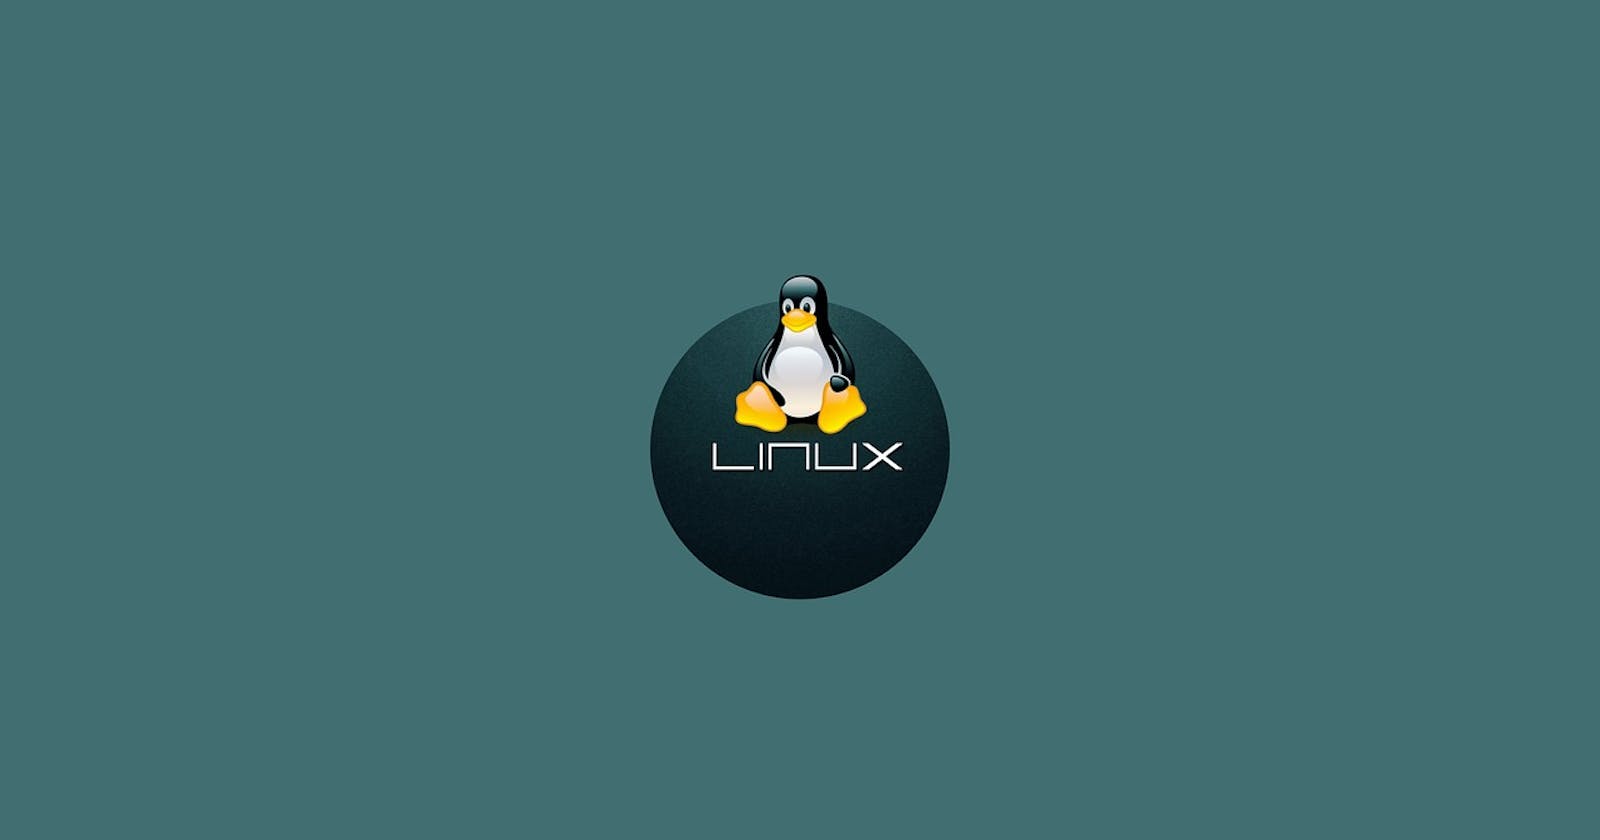 Linux distribution duh ber thlan dan leh install dawna hriat tur pawimawh ..